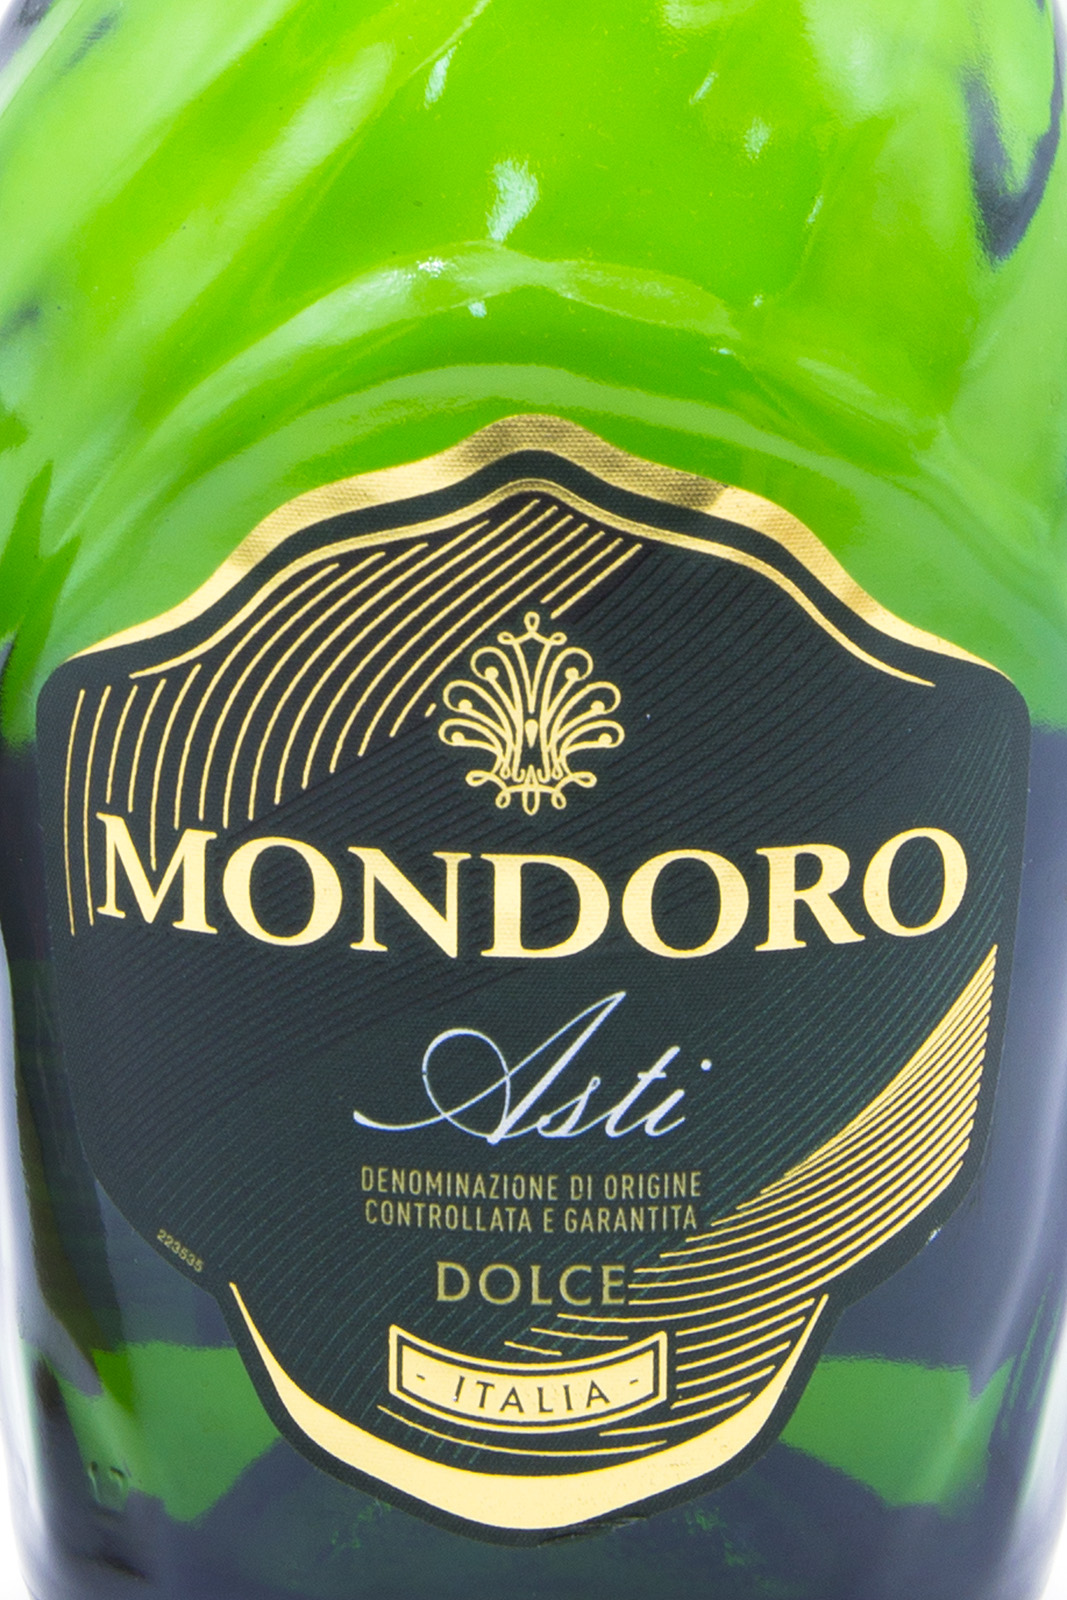 Mondoro dolce. Мондоро Асти Дольче. Шампанское Мондоро Асти Dolce. Вино Мондоро Асти. Mondoro Asti Dolce шампанское.